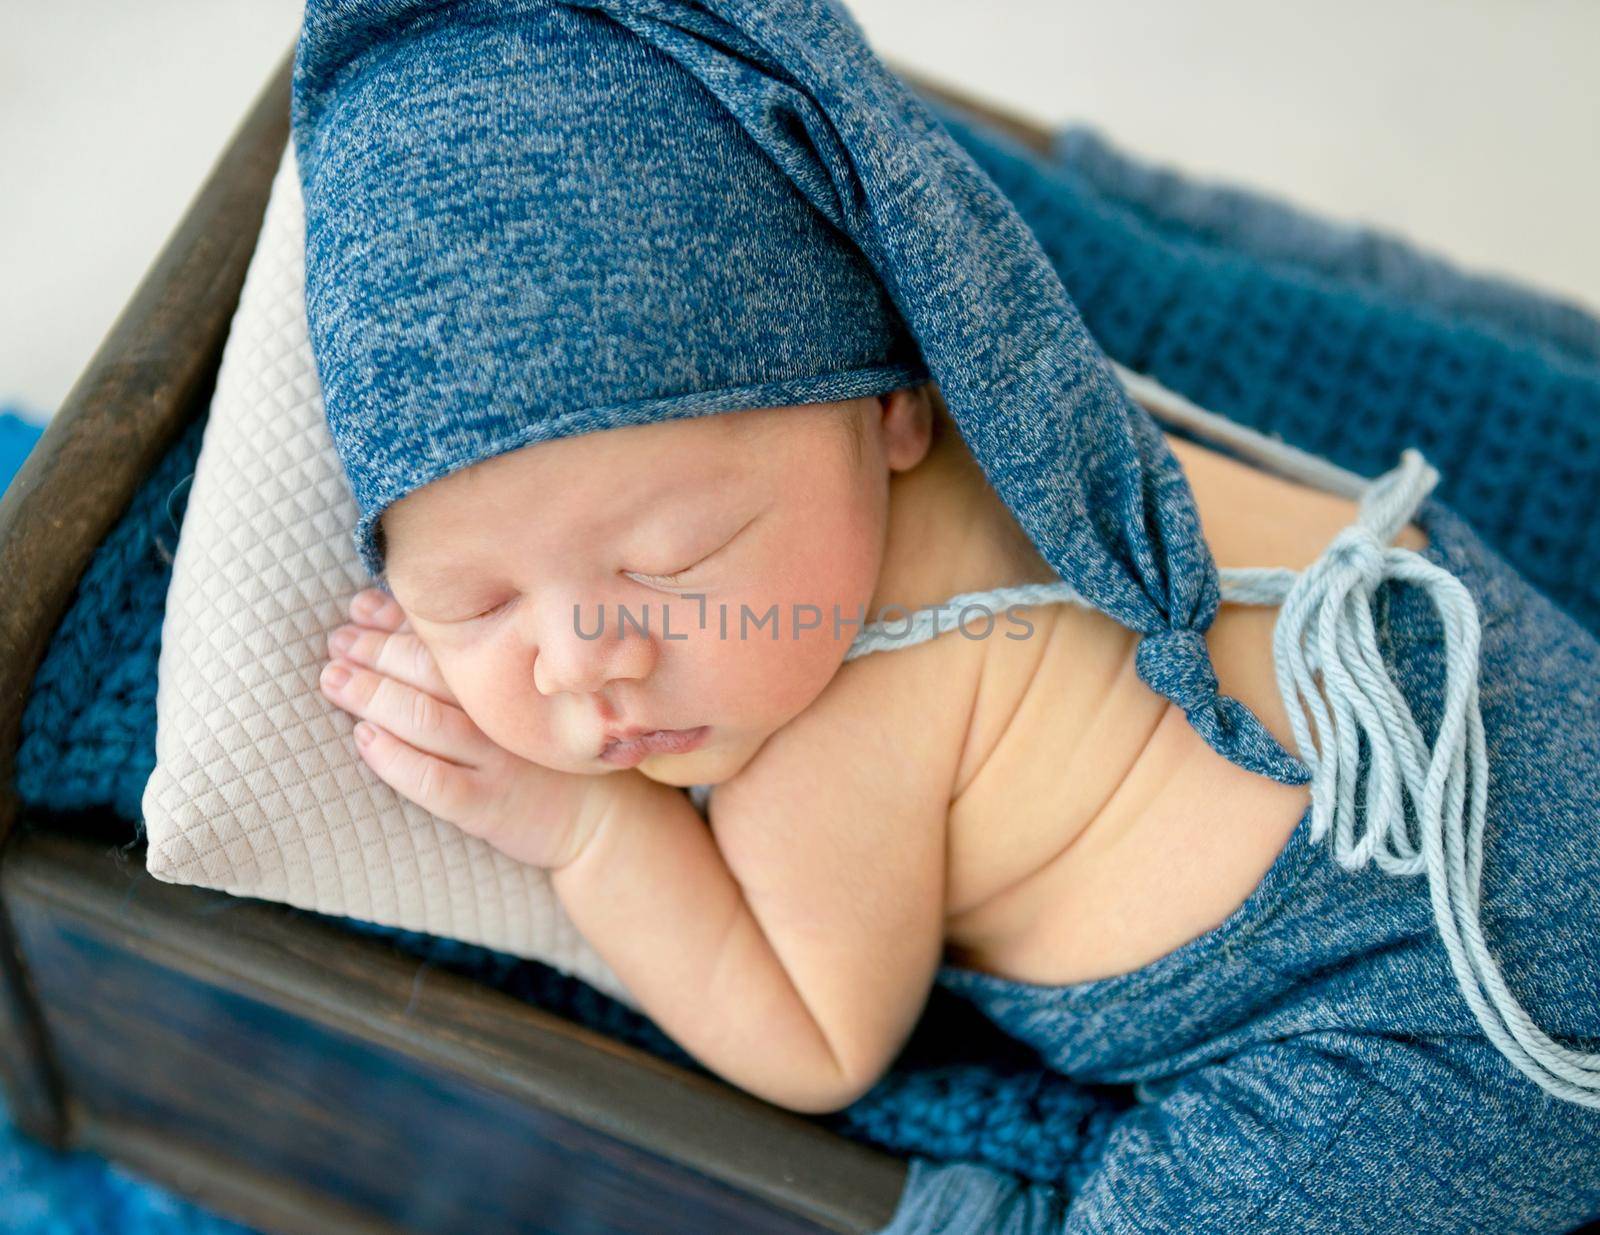 A little boy in a blue suit is sleeping sleeping in a little bed